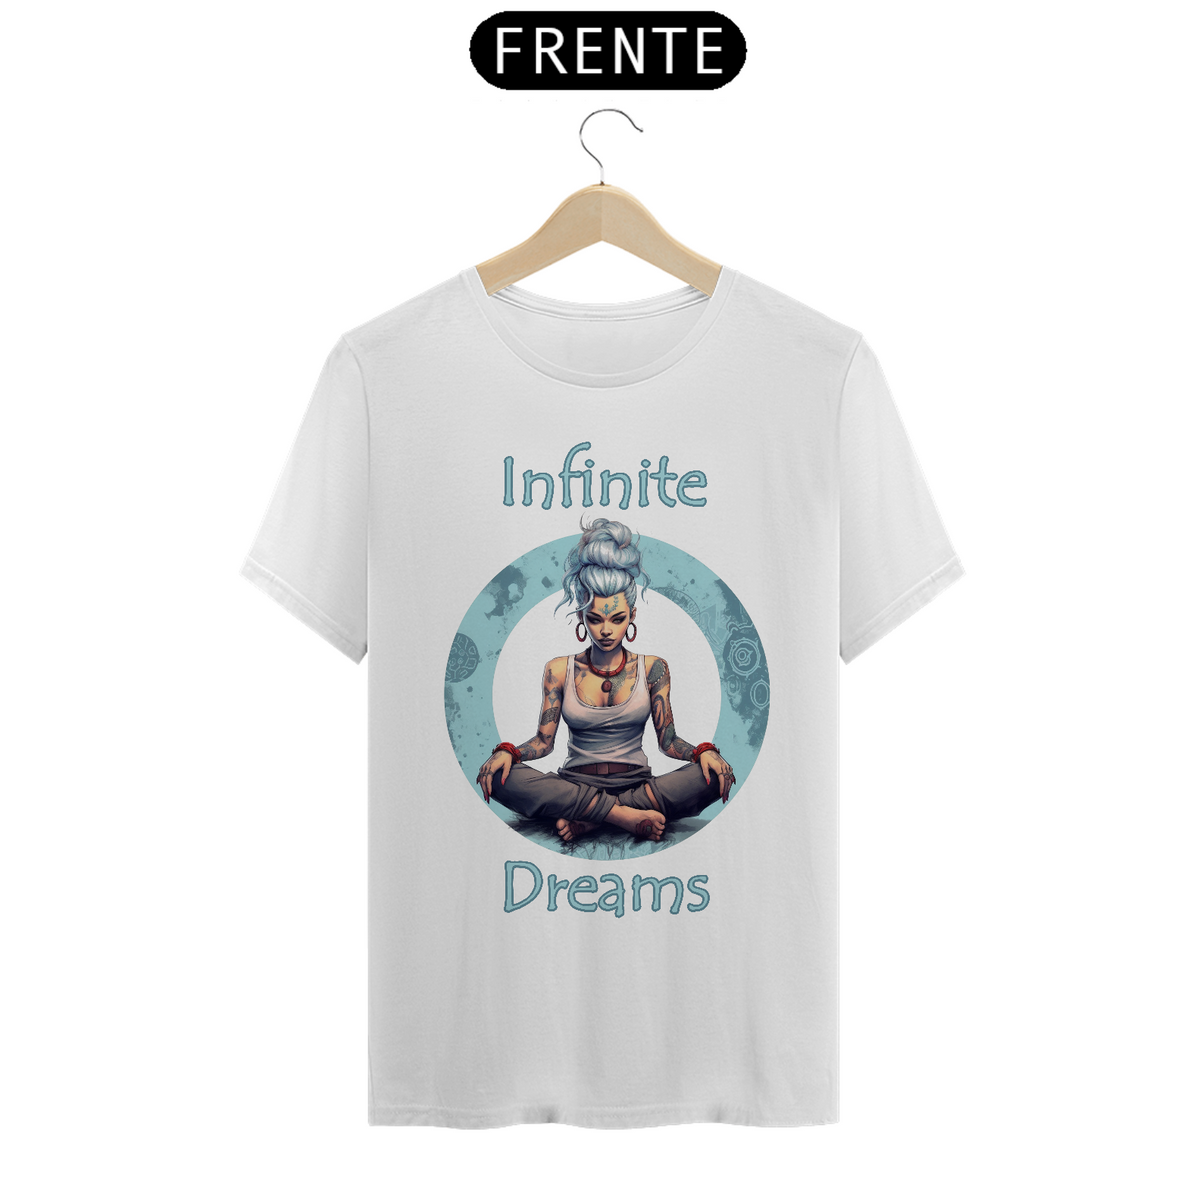 Nome do produto: Infinite Dreams (Frente)